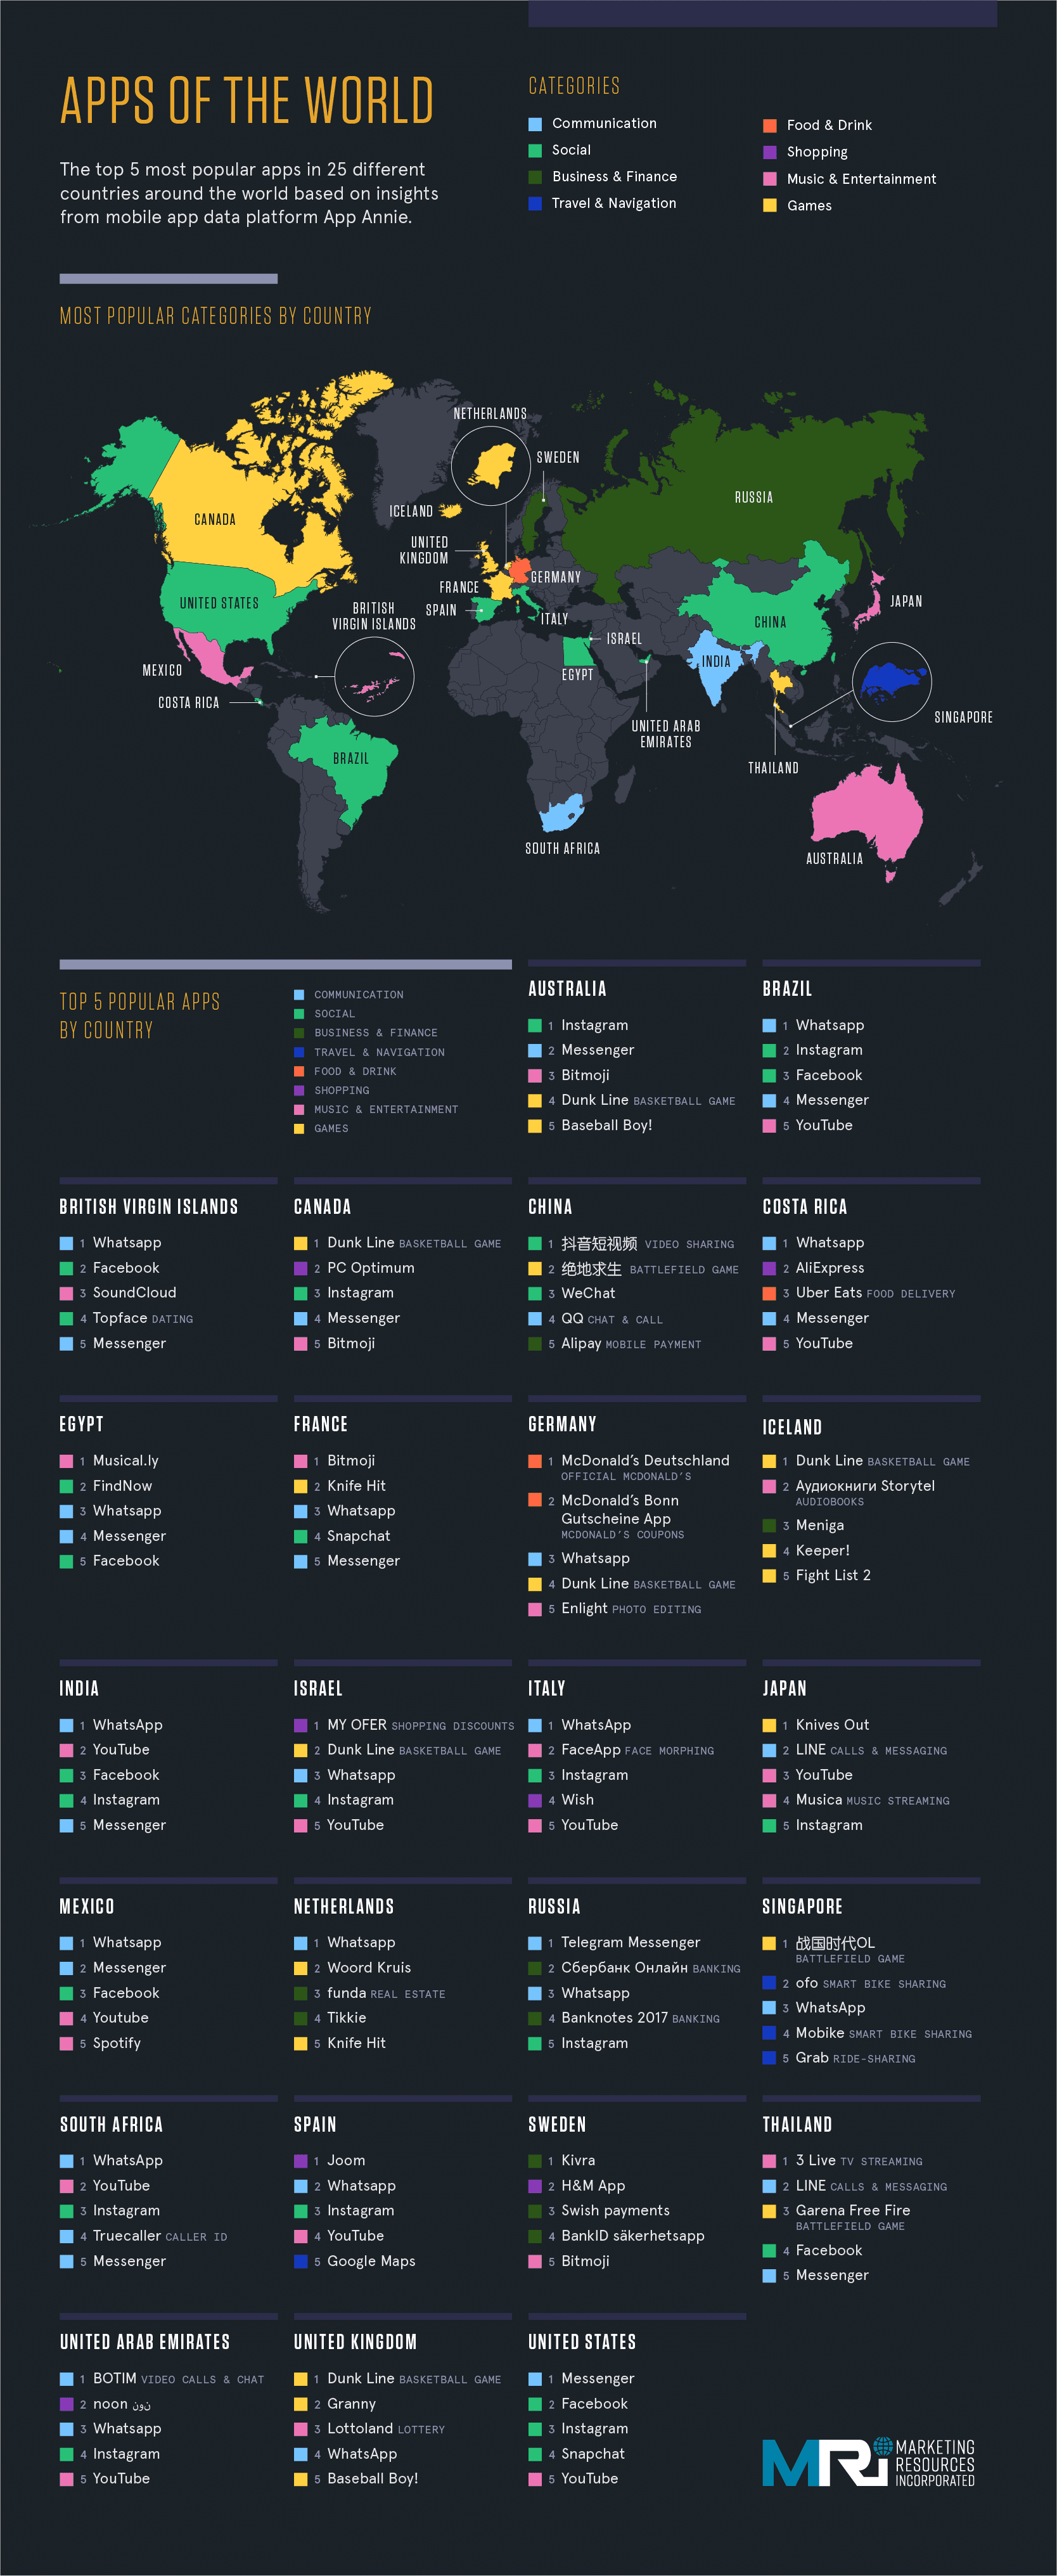 Los tipos de apps más usados en cada país